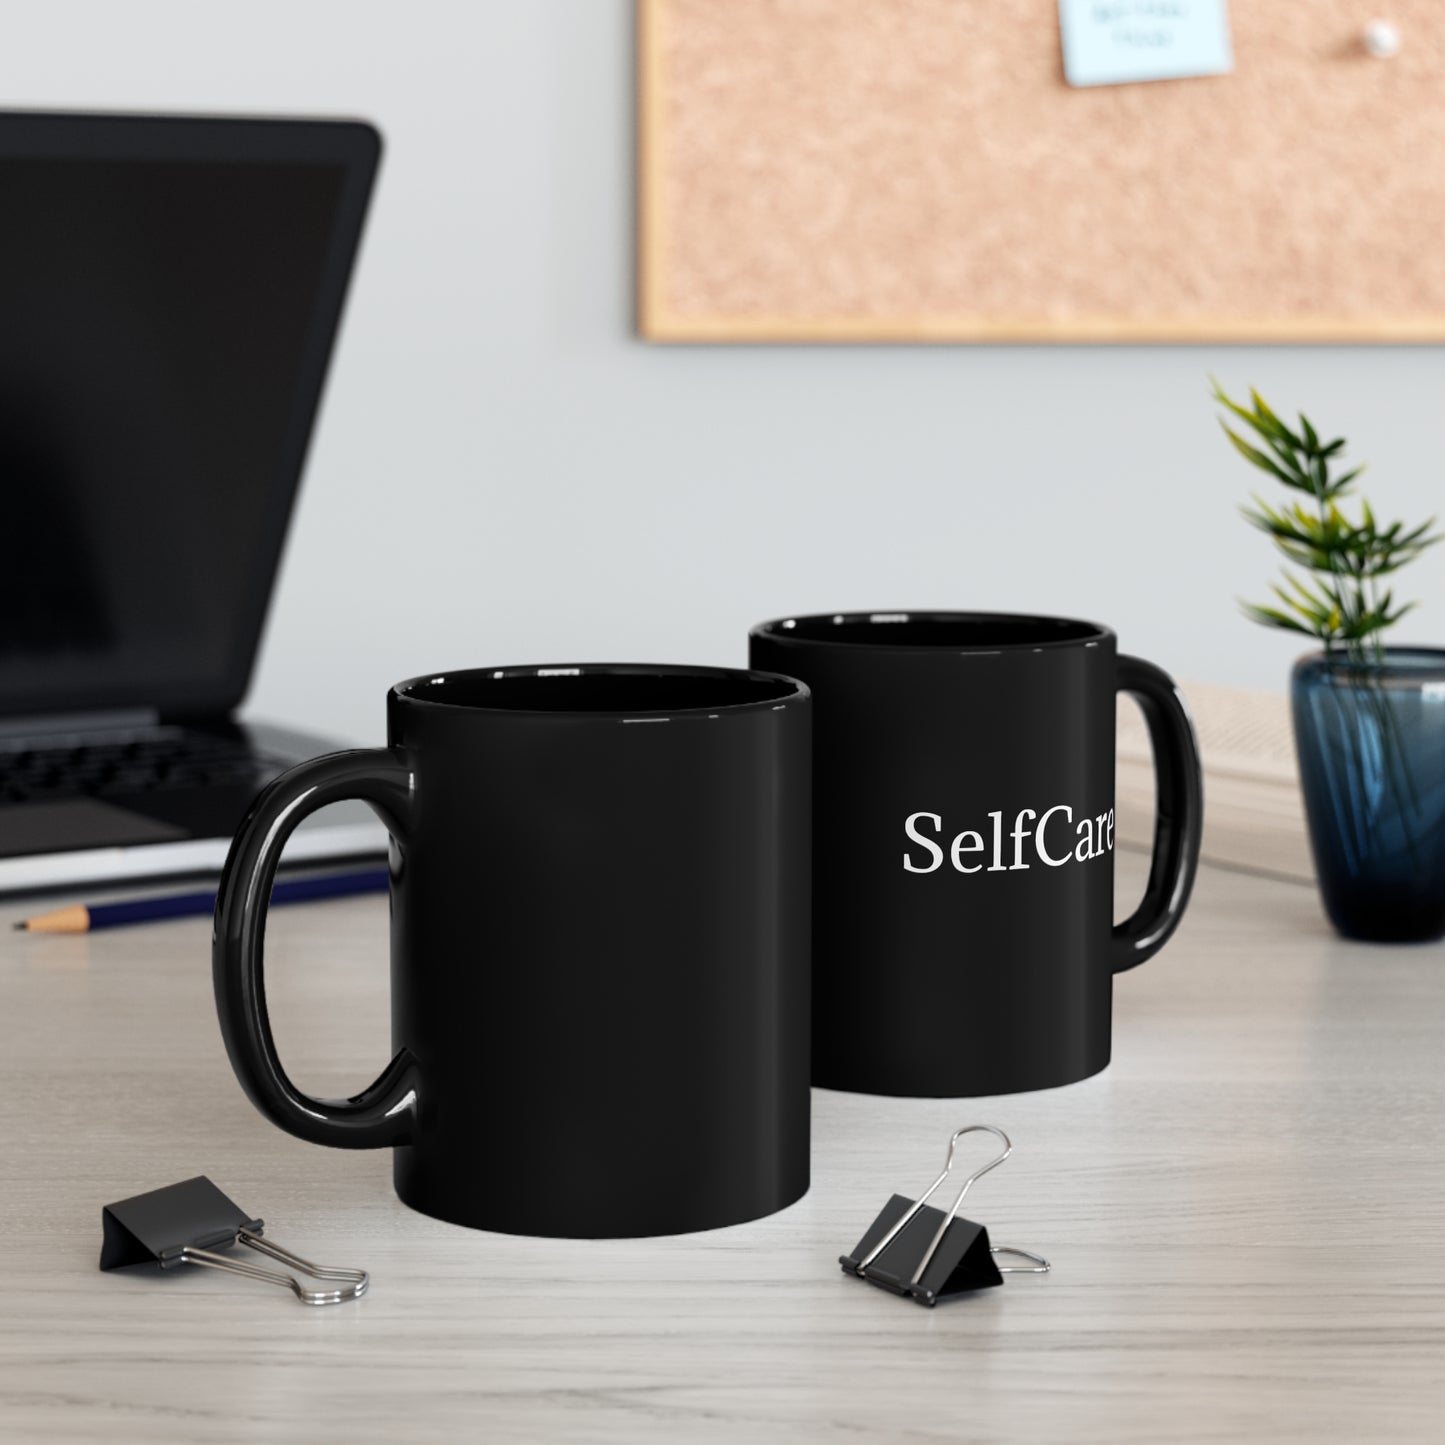 SelfcCare Mug Inspirational Mug Ceramic Coffee Mug SelfLove 11oz Black Mug